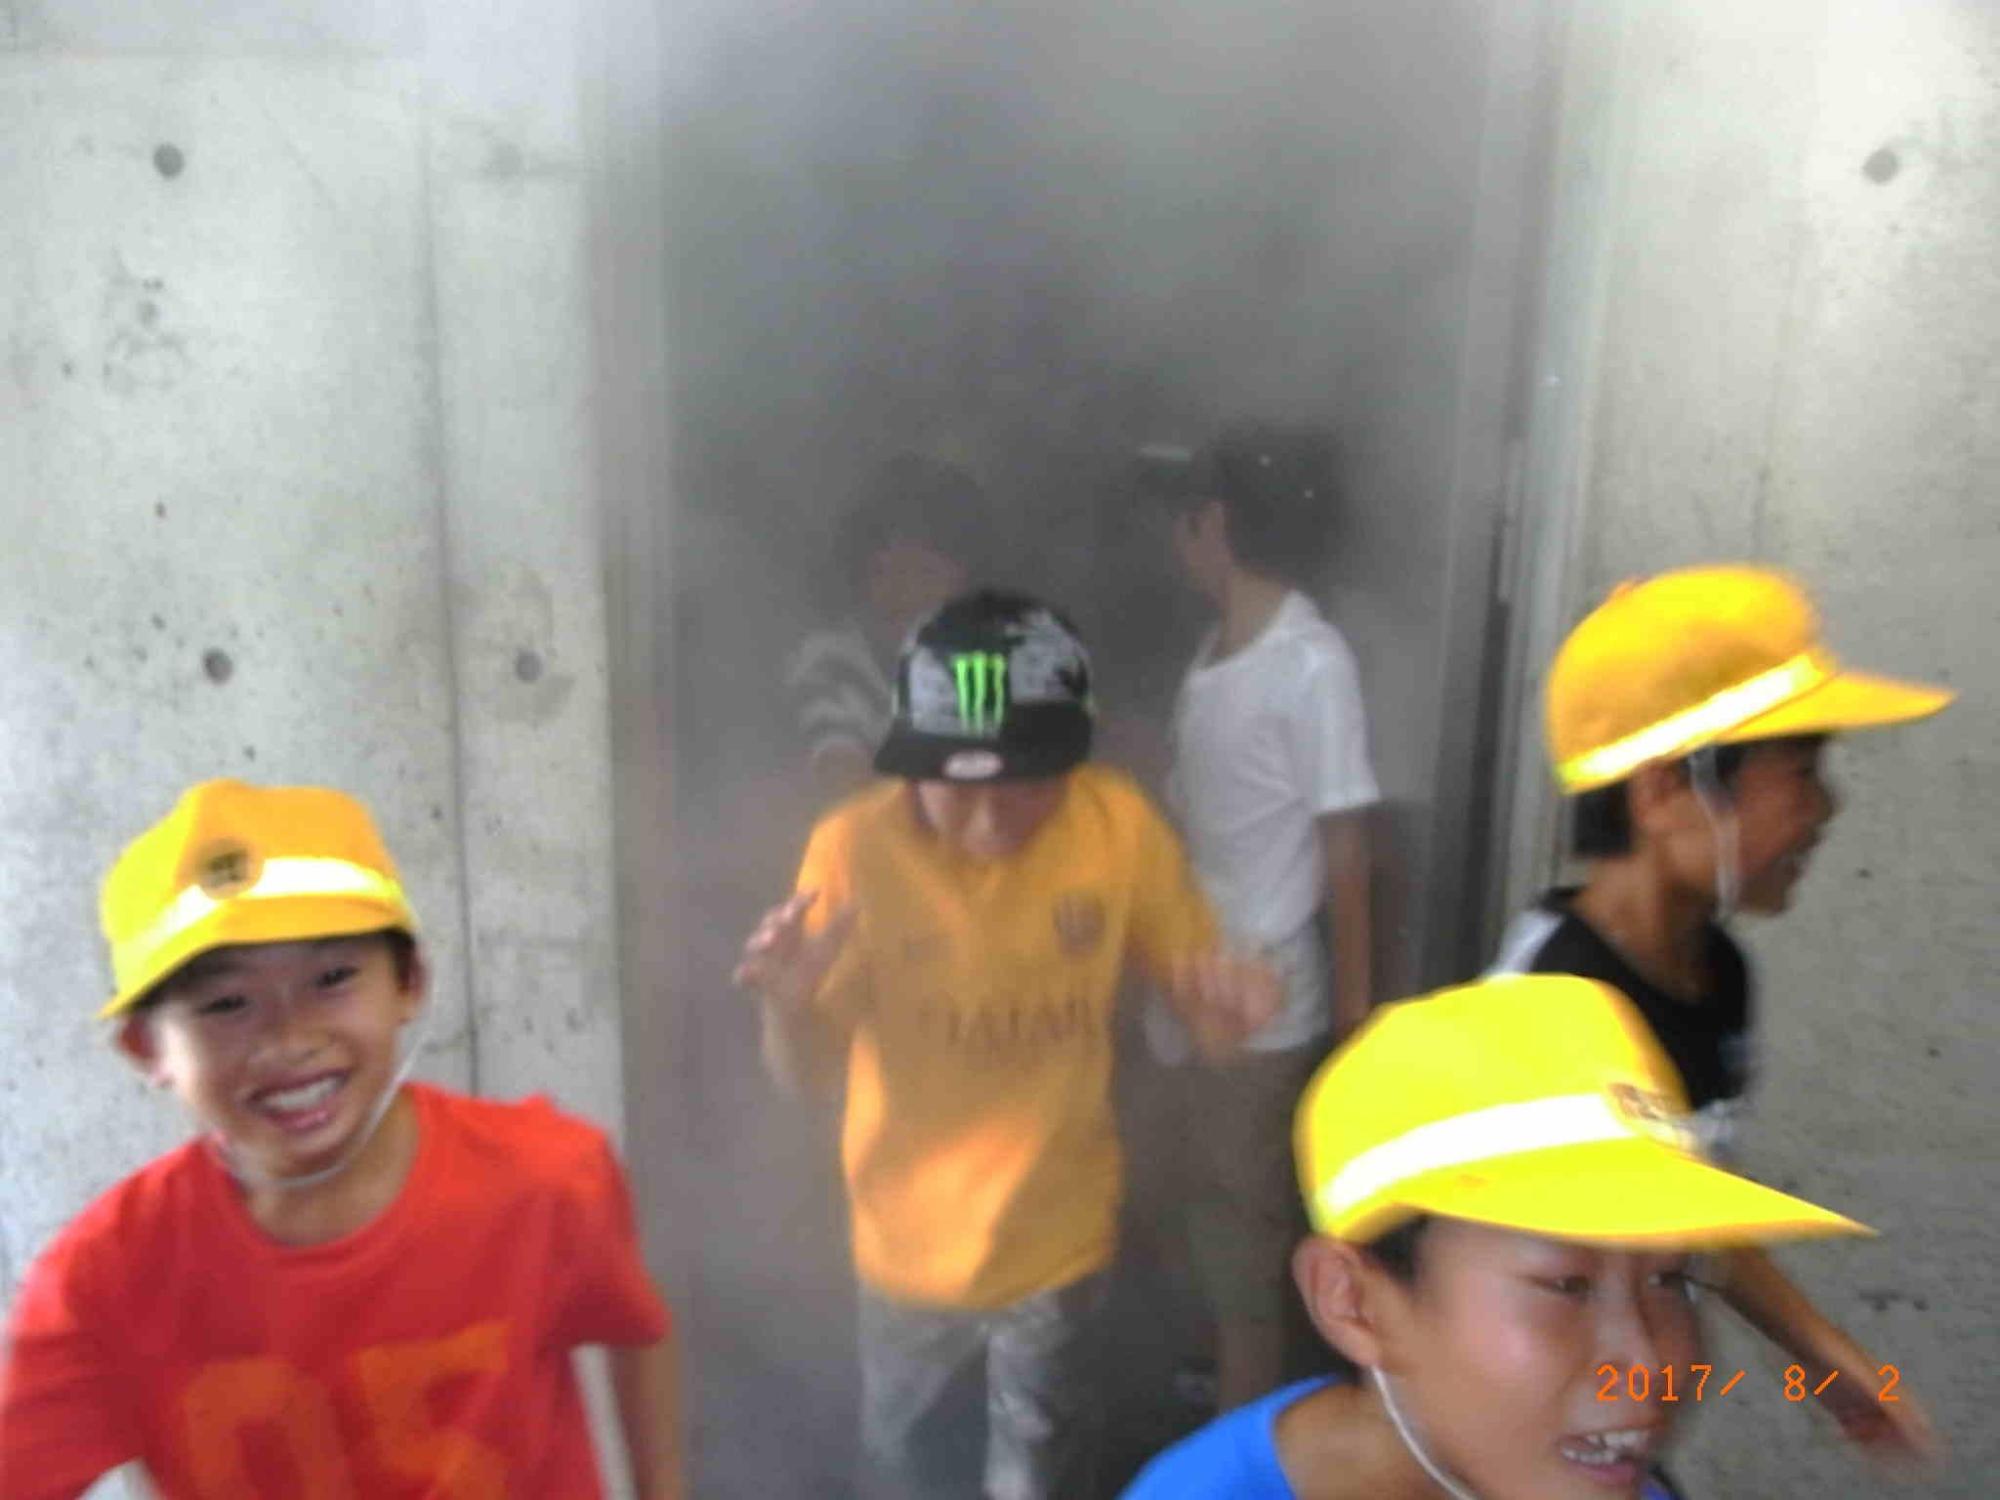 煙が充満している部屋から一斉に避難する生徒たちの写真